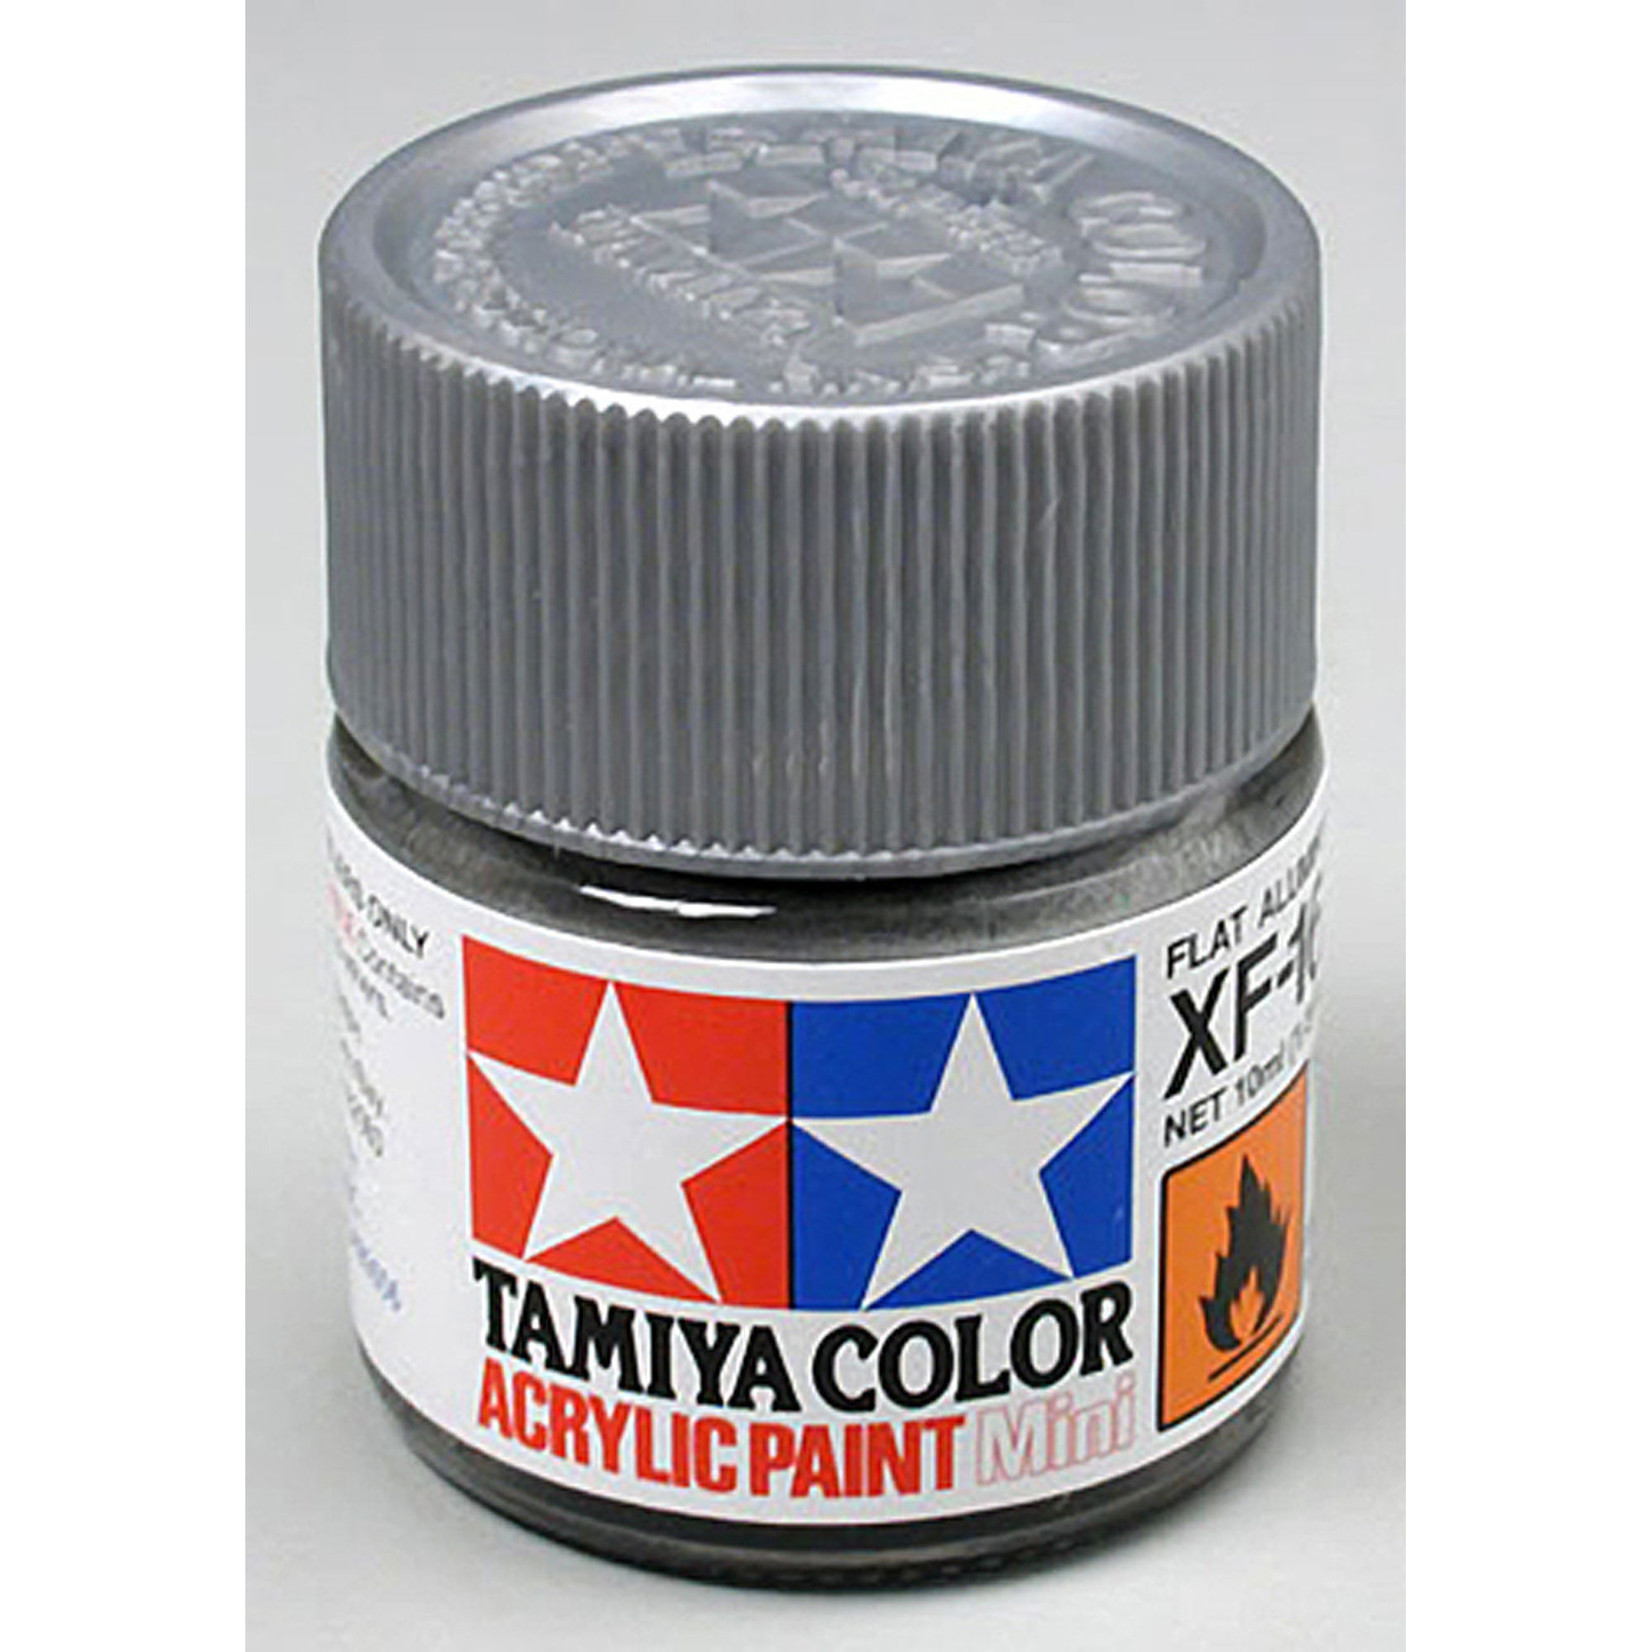 Tamiya Acrylic Mini XF16, Flat Aluminum